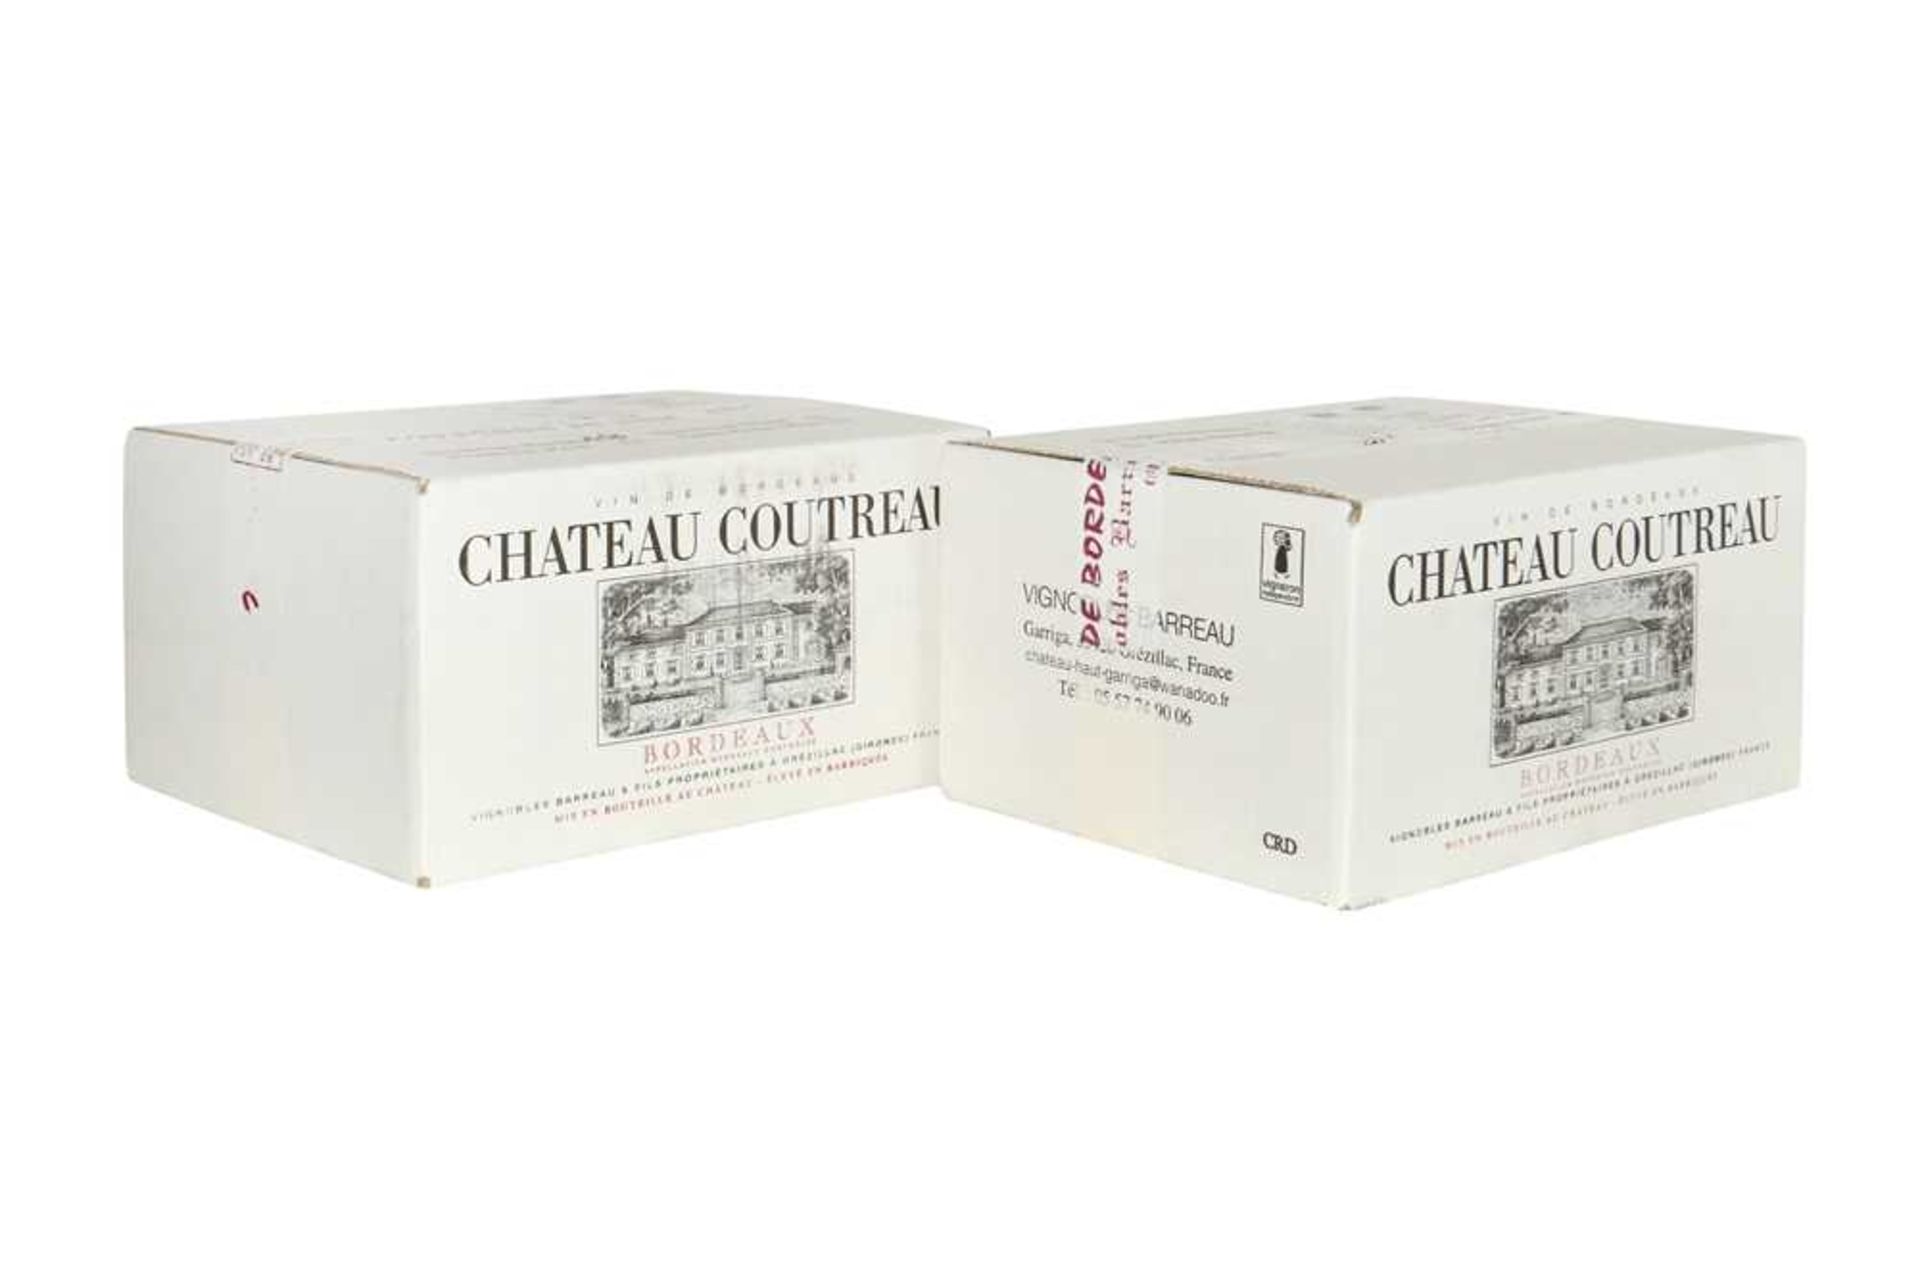 † Chateau Coutreau, Bordeaux, 2018, twelve bottles (two six bottle OCCs)